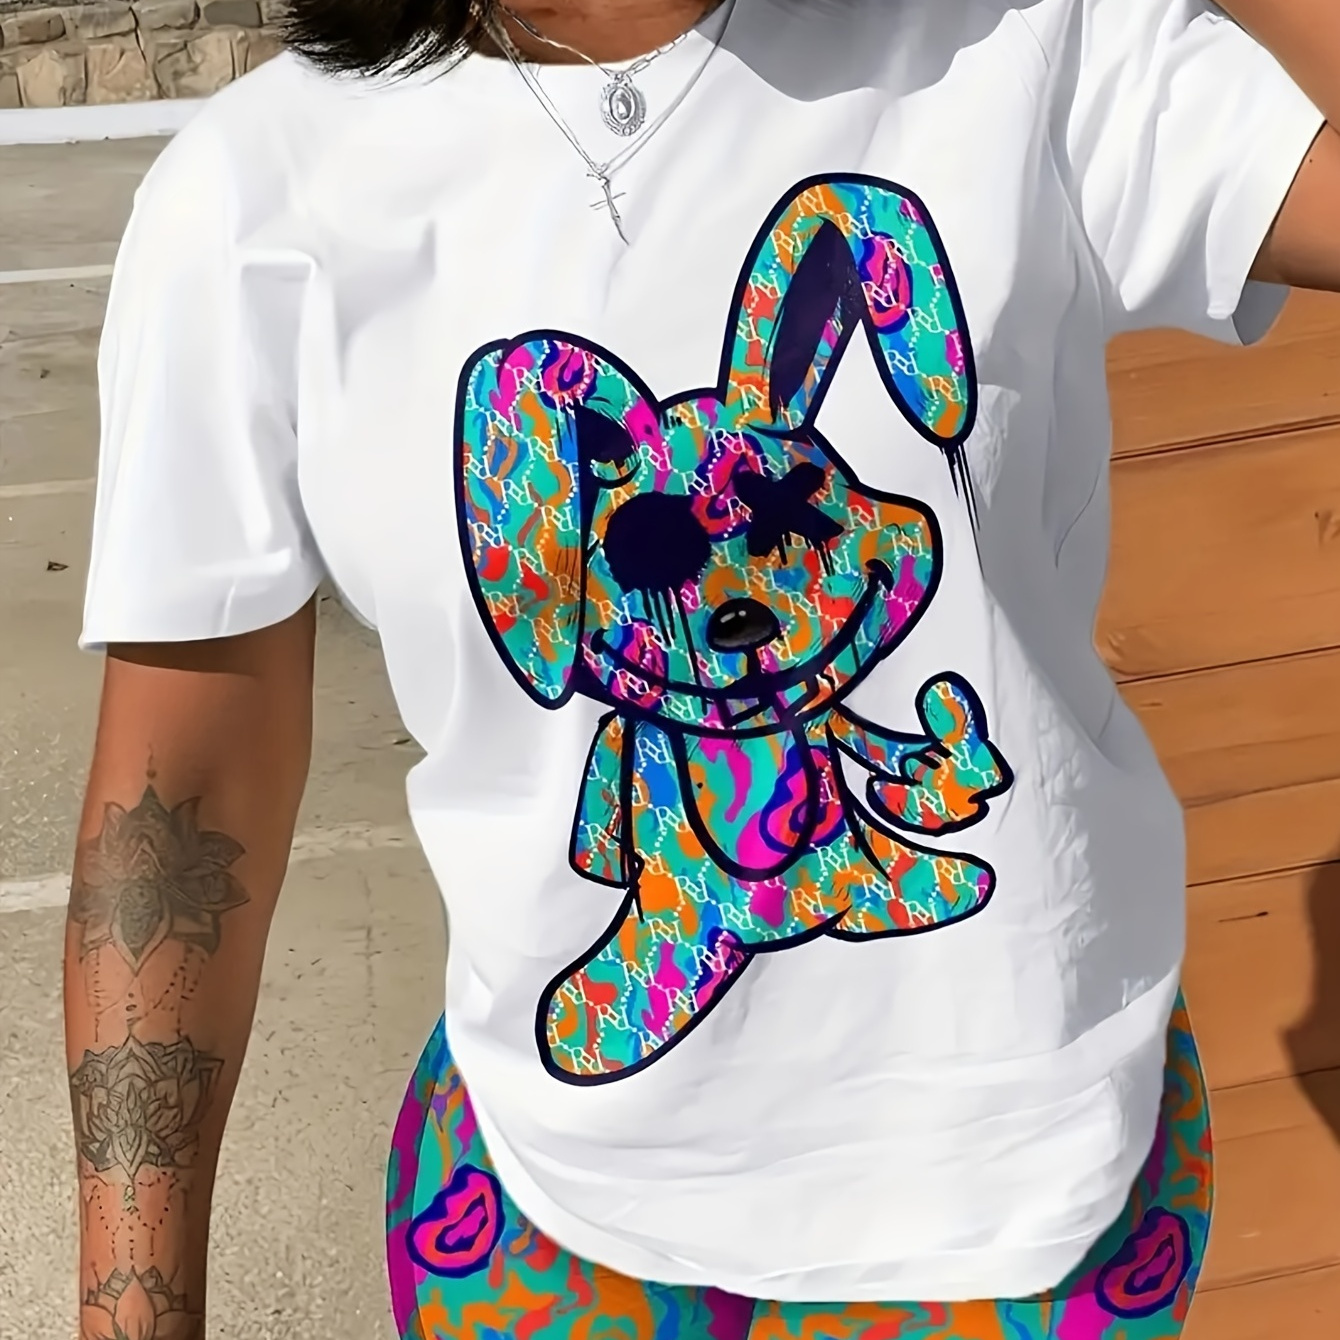 

Cartoon Rabbit Print T-shirt, Casual Crew Neck Short Sleeve Summer T-shirt, Women's Clothing